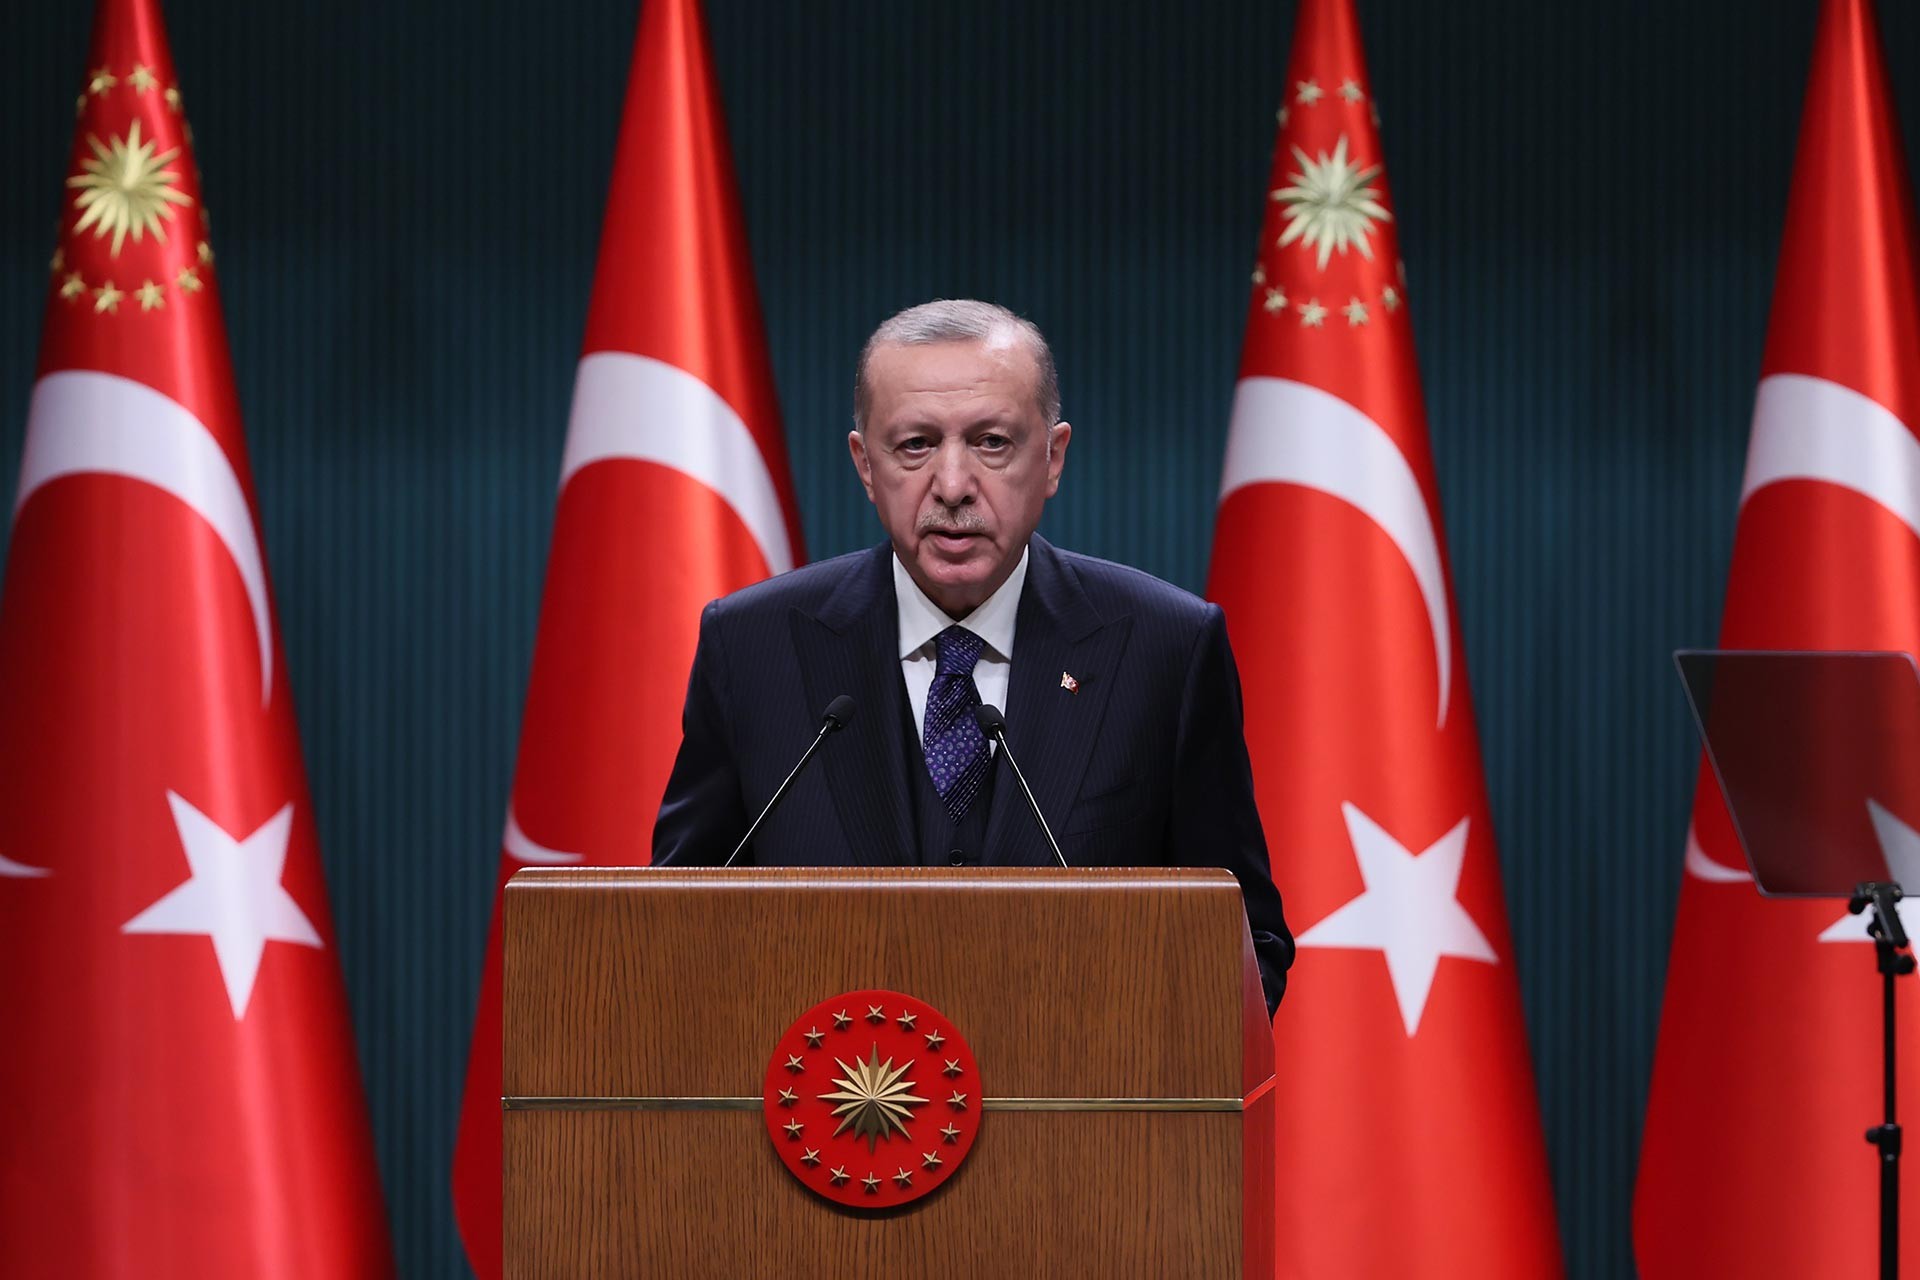 Son Dakika | Cumhurbaşkanı Recep Tayyip Erdoğan'dan koronavirüs açıklaması!